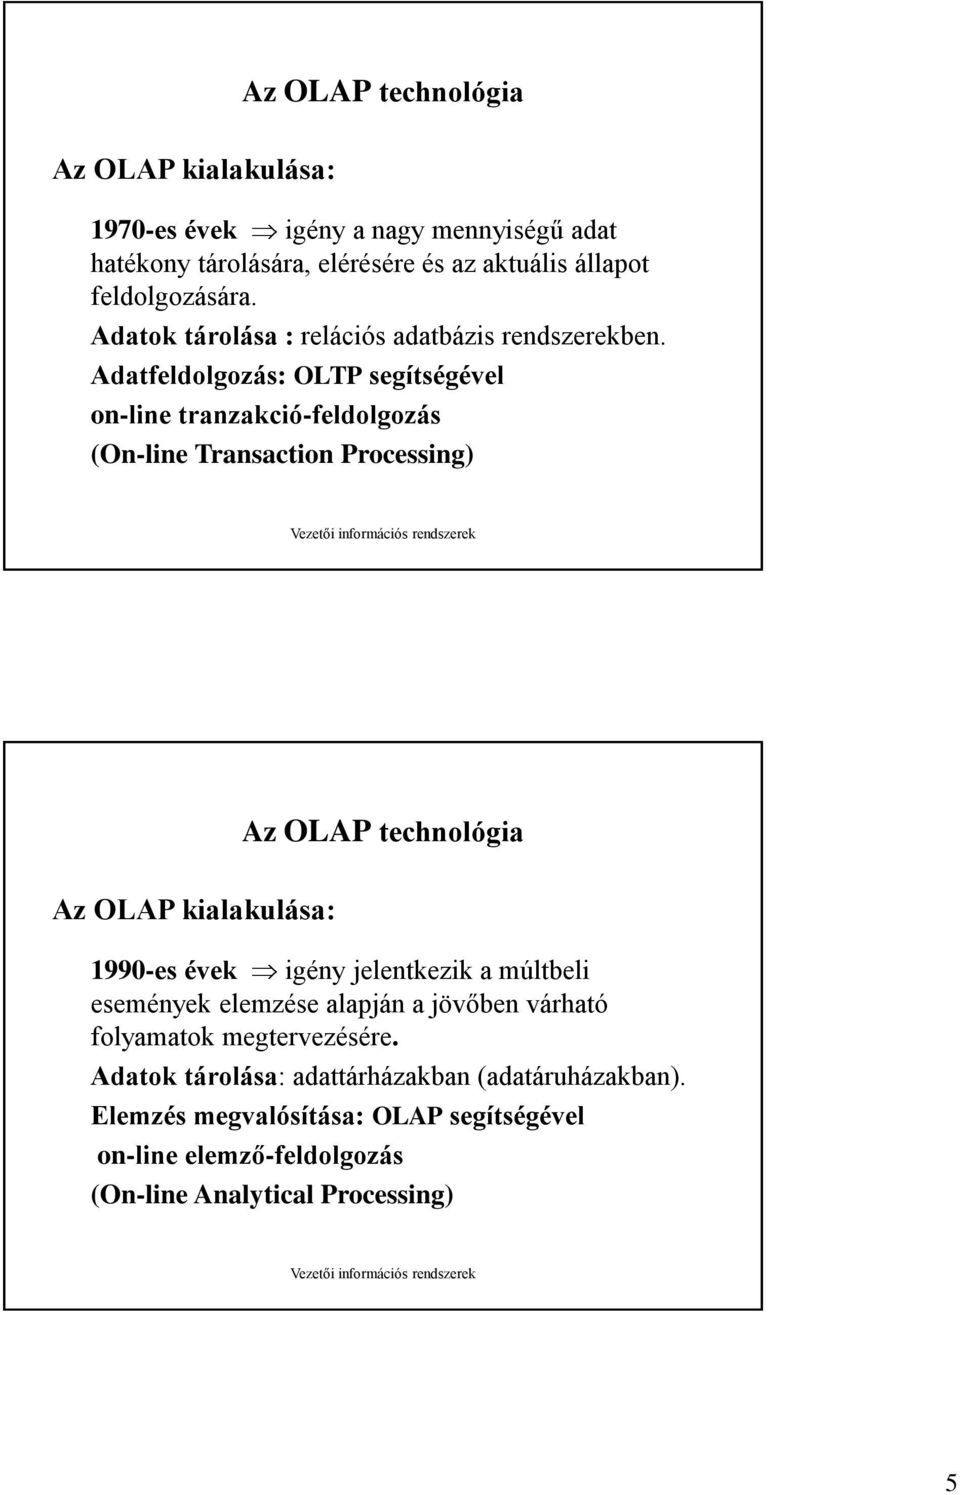 Adatfeldolgozás: OLTP segítségével on-line tranzakció-feldolgozás (On-line Transaction Processing) Az OLAP kialakulása: Az OLAP technológia 1990-es évek